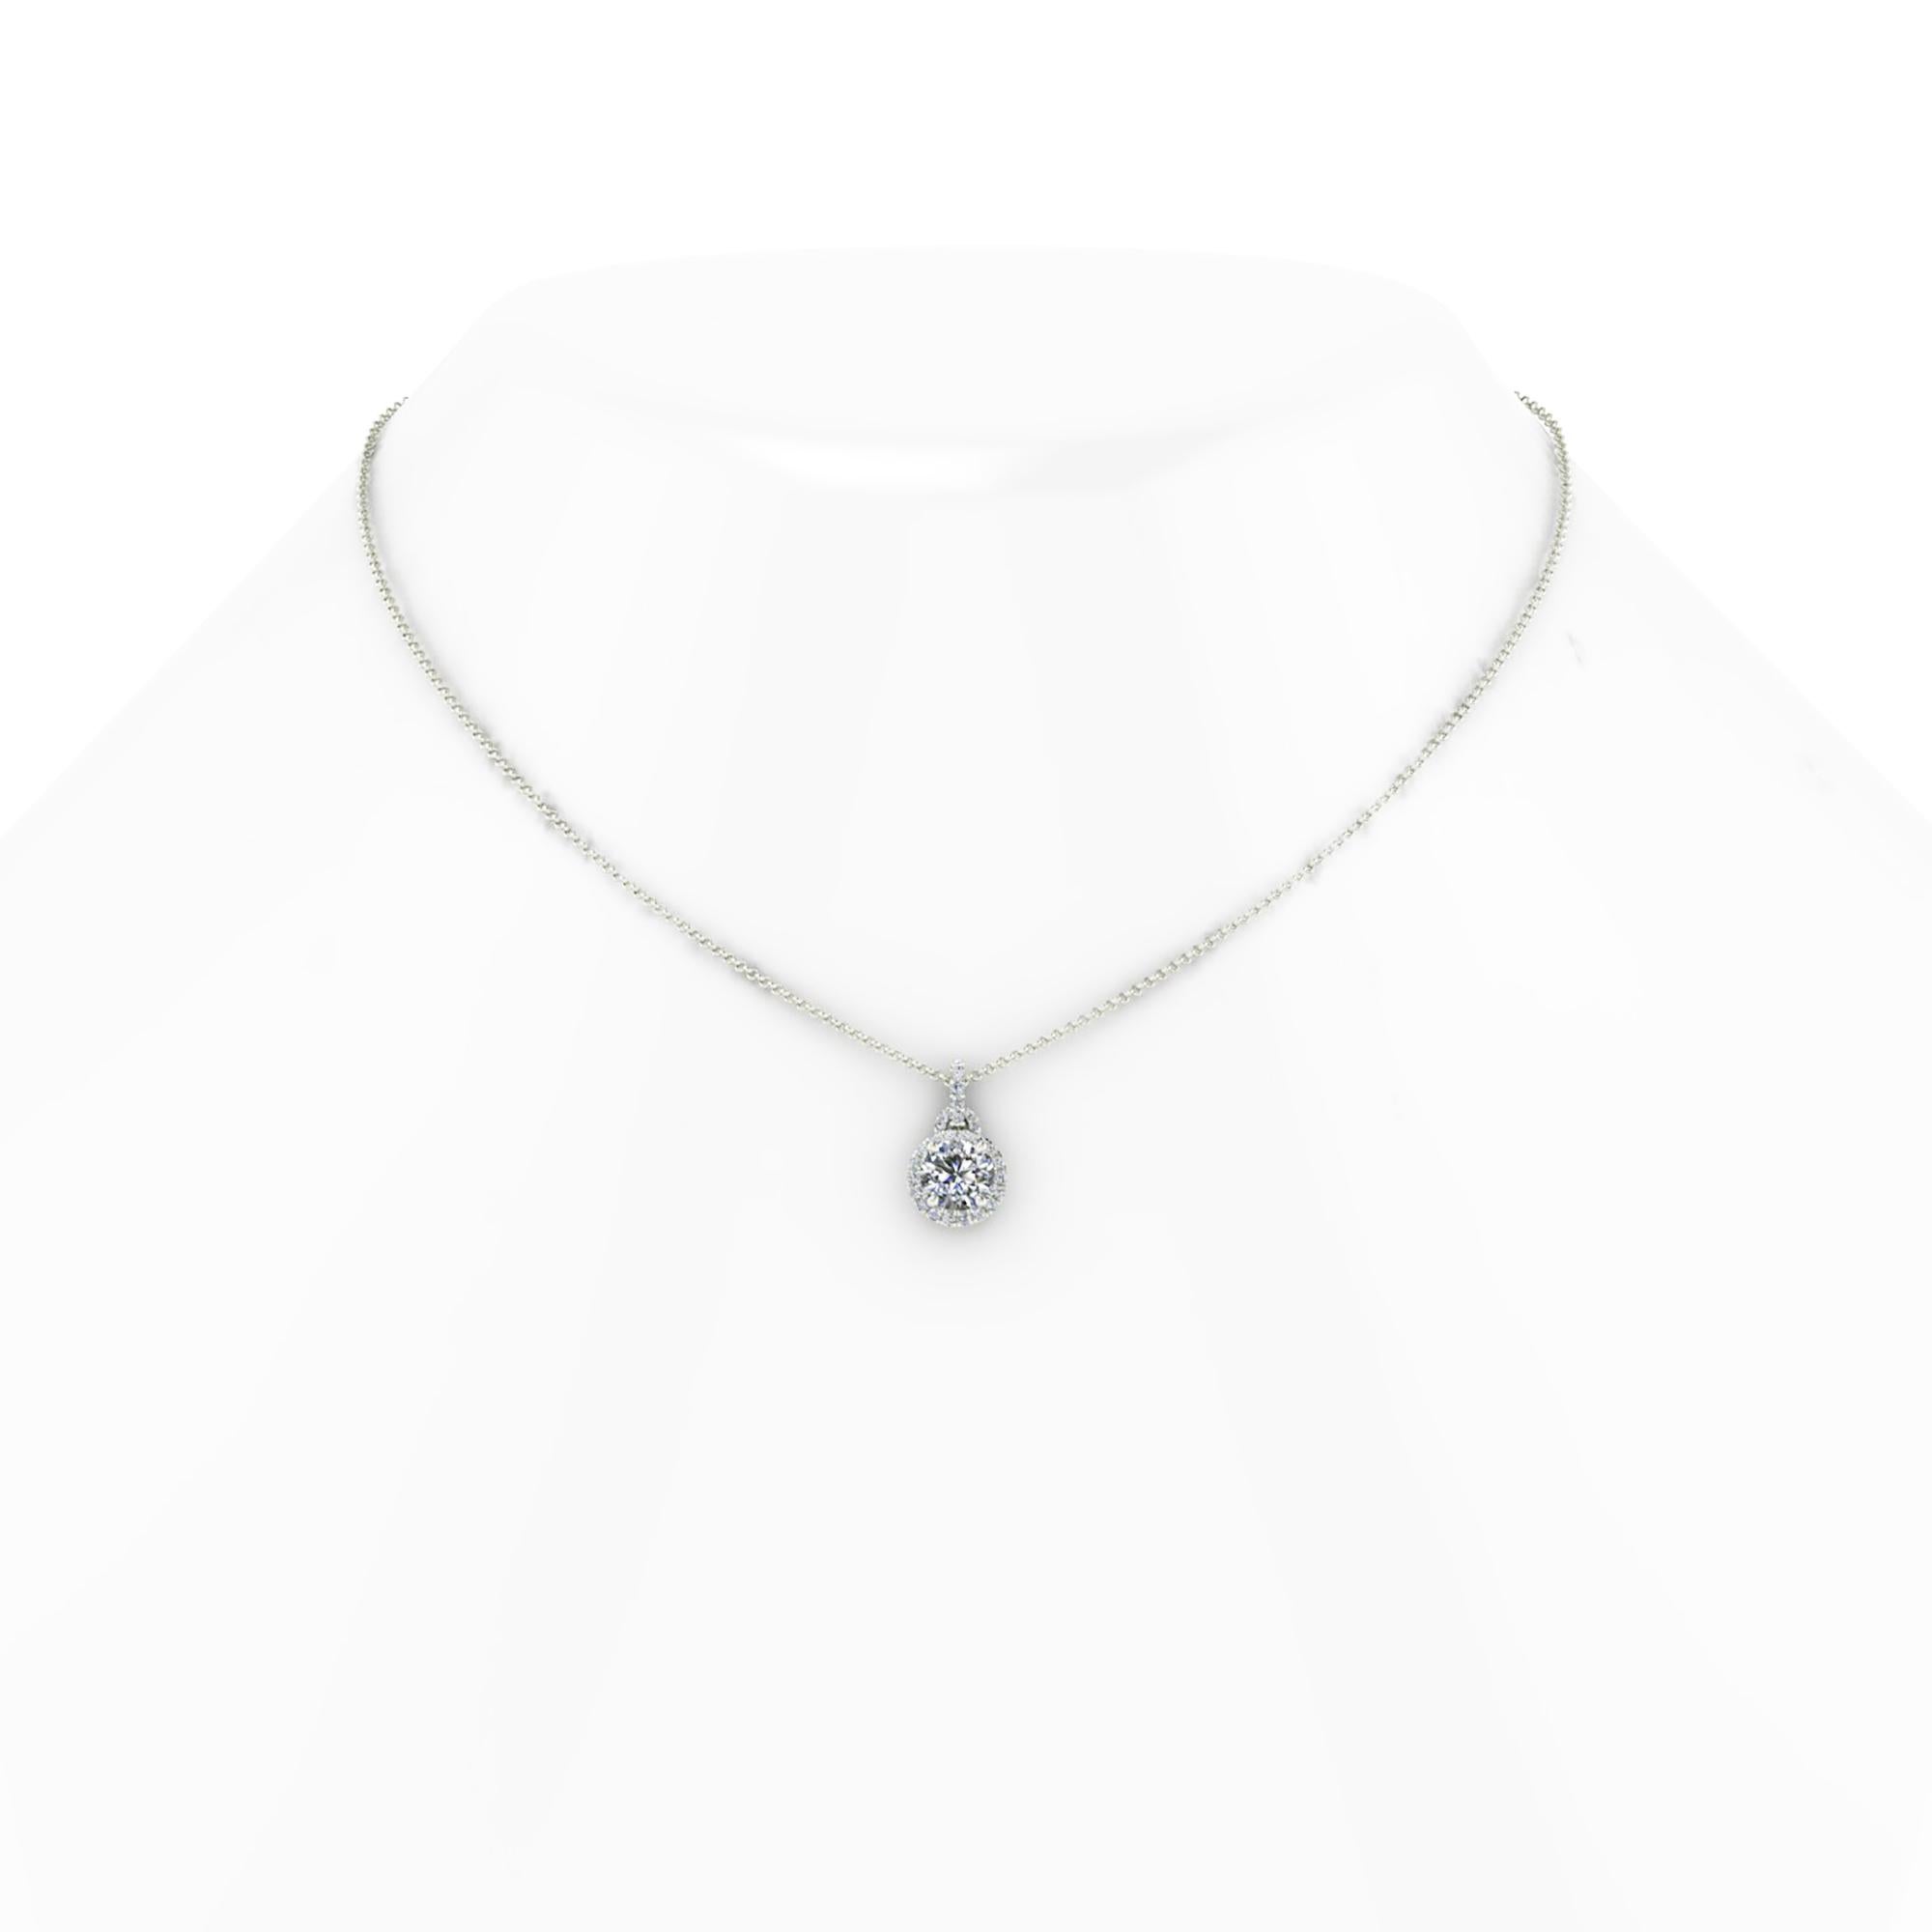 1.01 Karat GIA-zertifizierte runde Brillantschliff Diamant, H Farbe, VS2 Klarheit, Platin 950 Diamant Halo-Halskette, mit einem Gesamtkaratgewicht von 1,20 Karat, mit Platin denken Kabelkette mit 16 